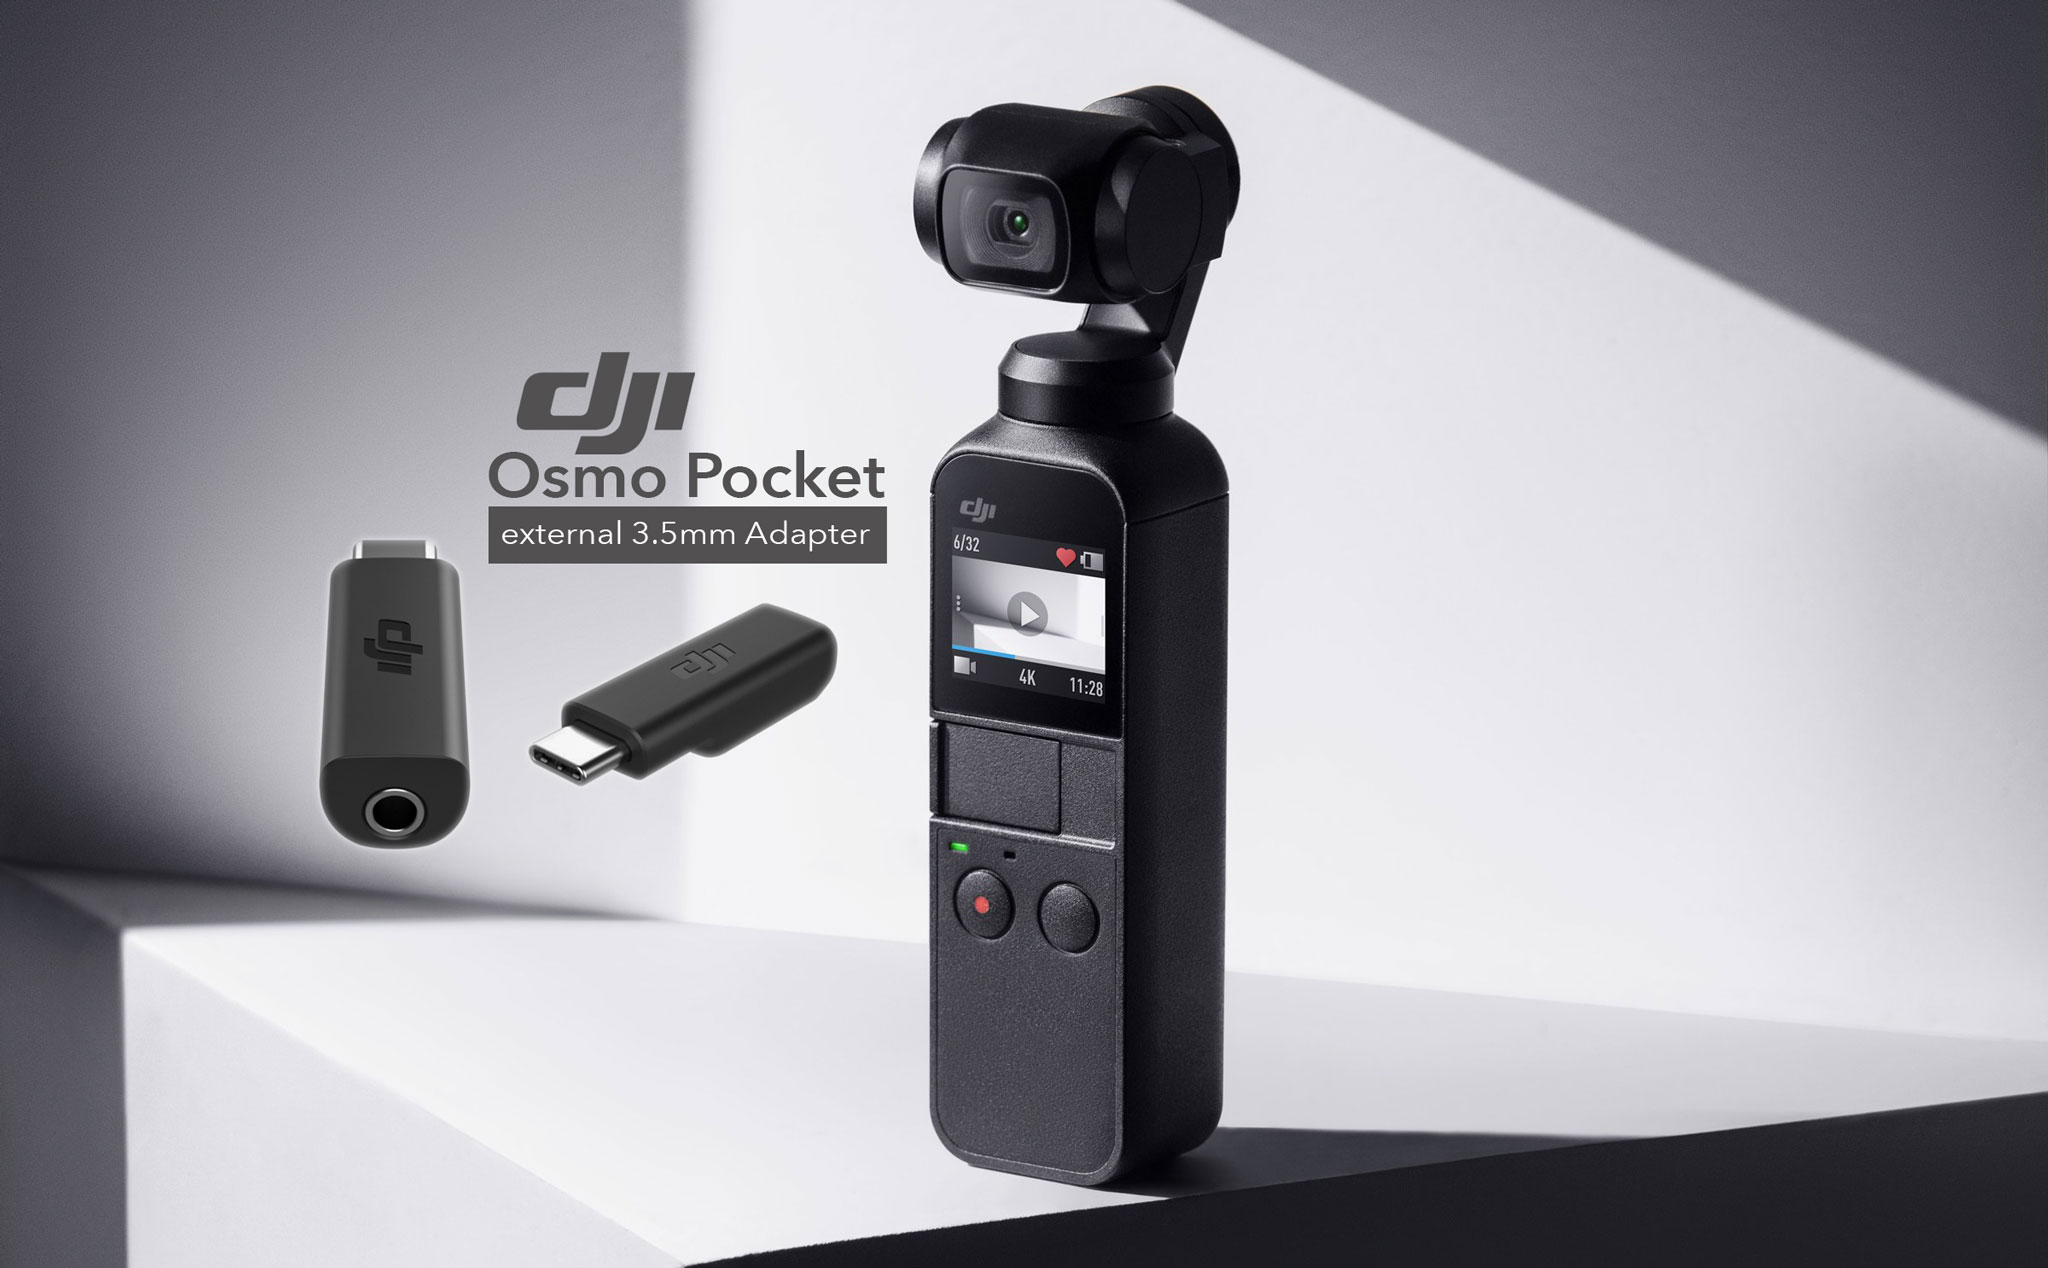 Giải pháp giúp vlogger sử dụng DJI Osmo Pocket gắn được Mic rời để cải thiện âm thanh khi quay video